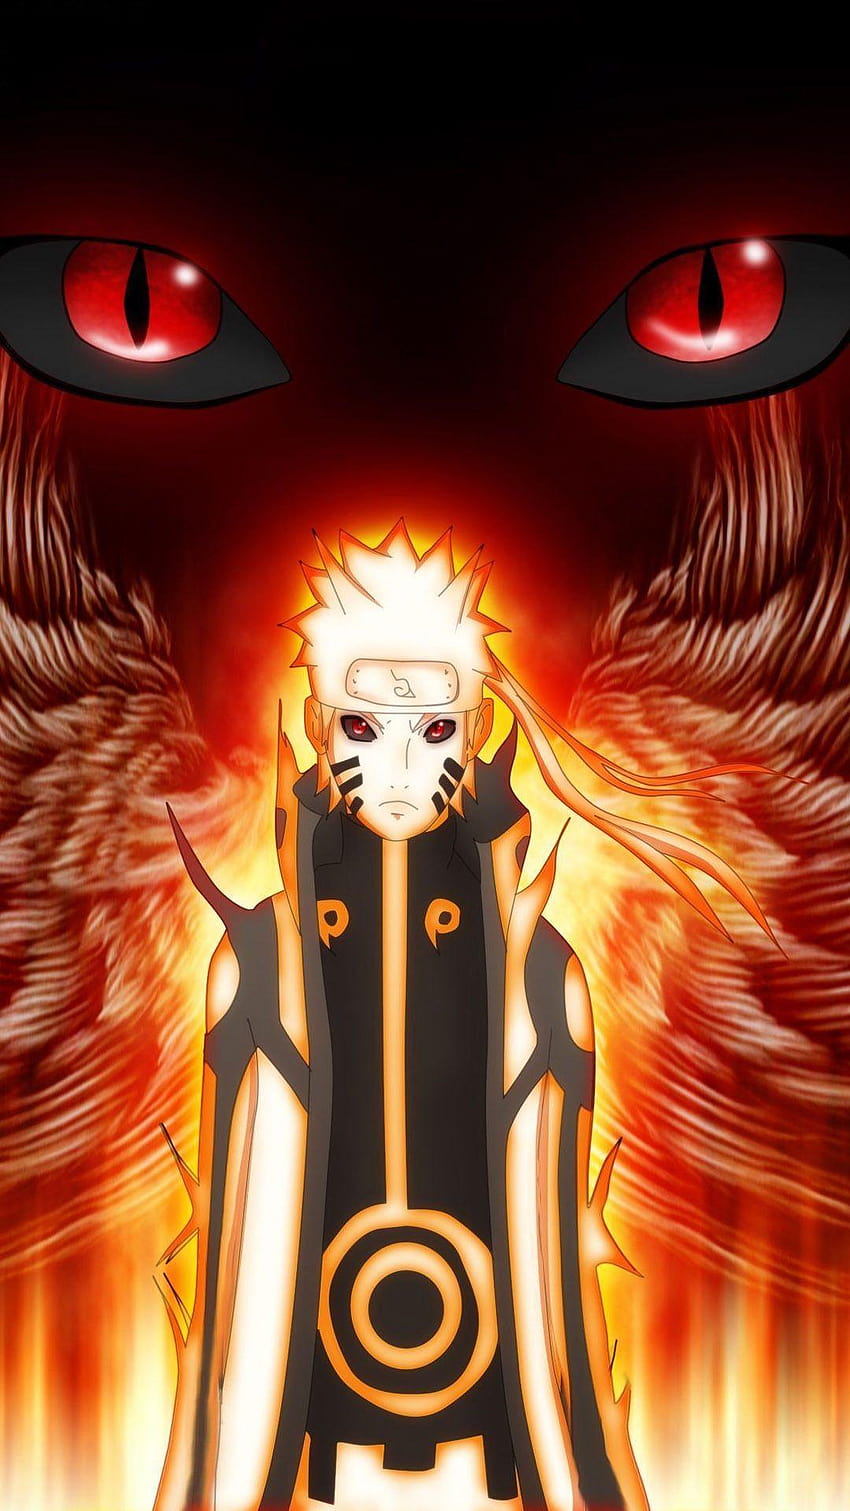 Naruto Mobile Group - Nếu bạn là một fan hâm mộ của Naruto, bạn sẽ không thể bỏ qua cộng đồng Naruto Mobile Group trên di động, với các trò chơi và hoạt động liên quan đến Naruto. Đó sẽ là nơi tuyệt vời để giao lưu và chia sẻ với những người có cùng sở thích và đam mê với cả bạn.